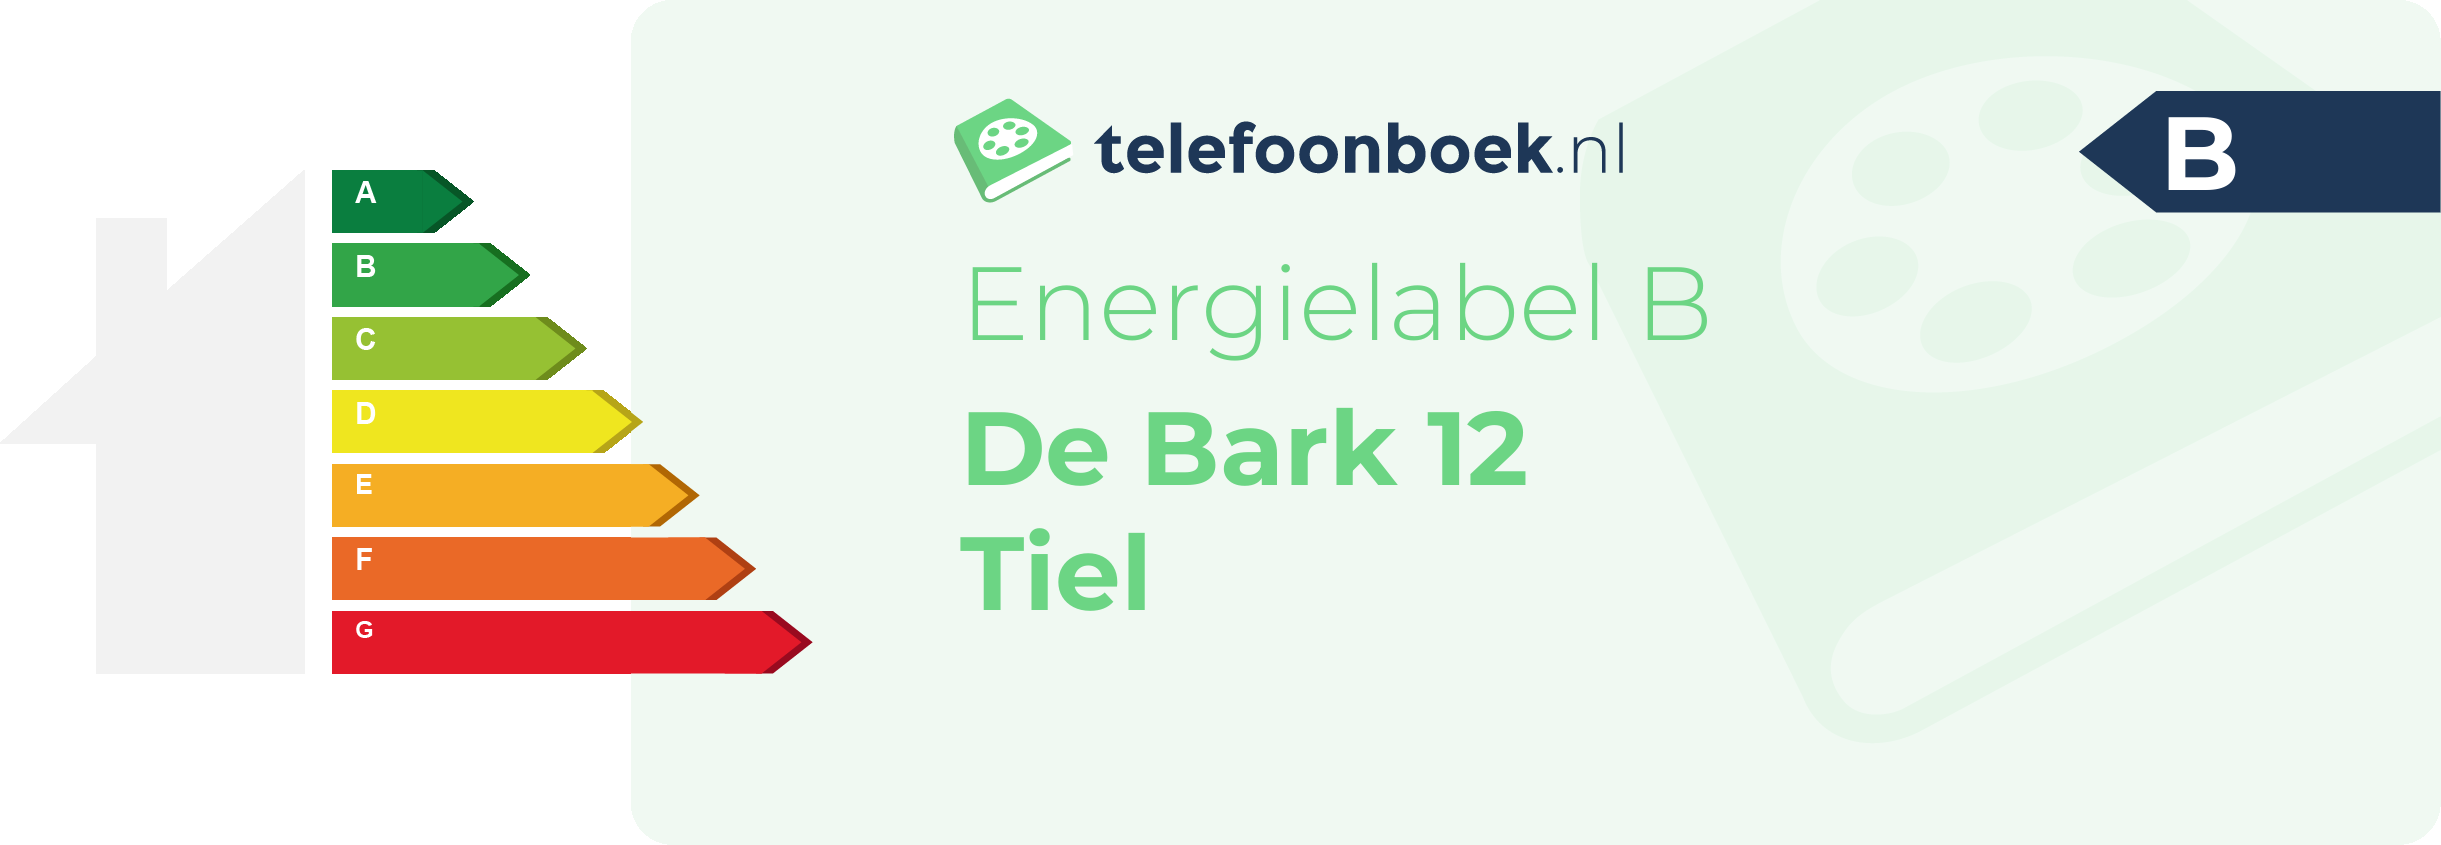 Energielabel De Bark 12 Tiel